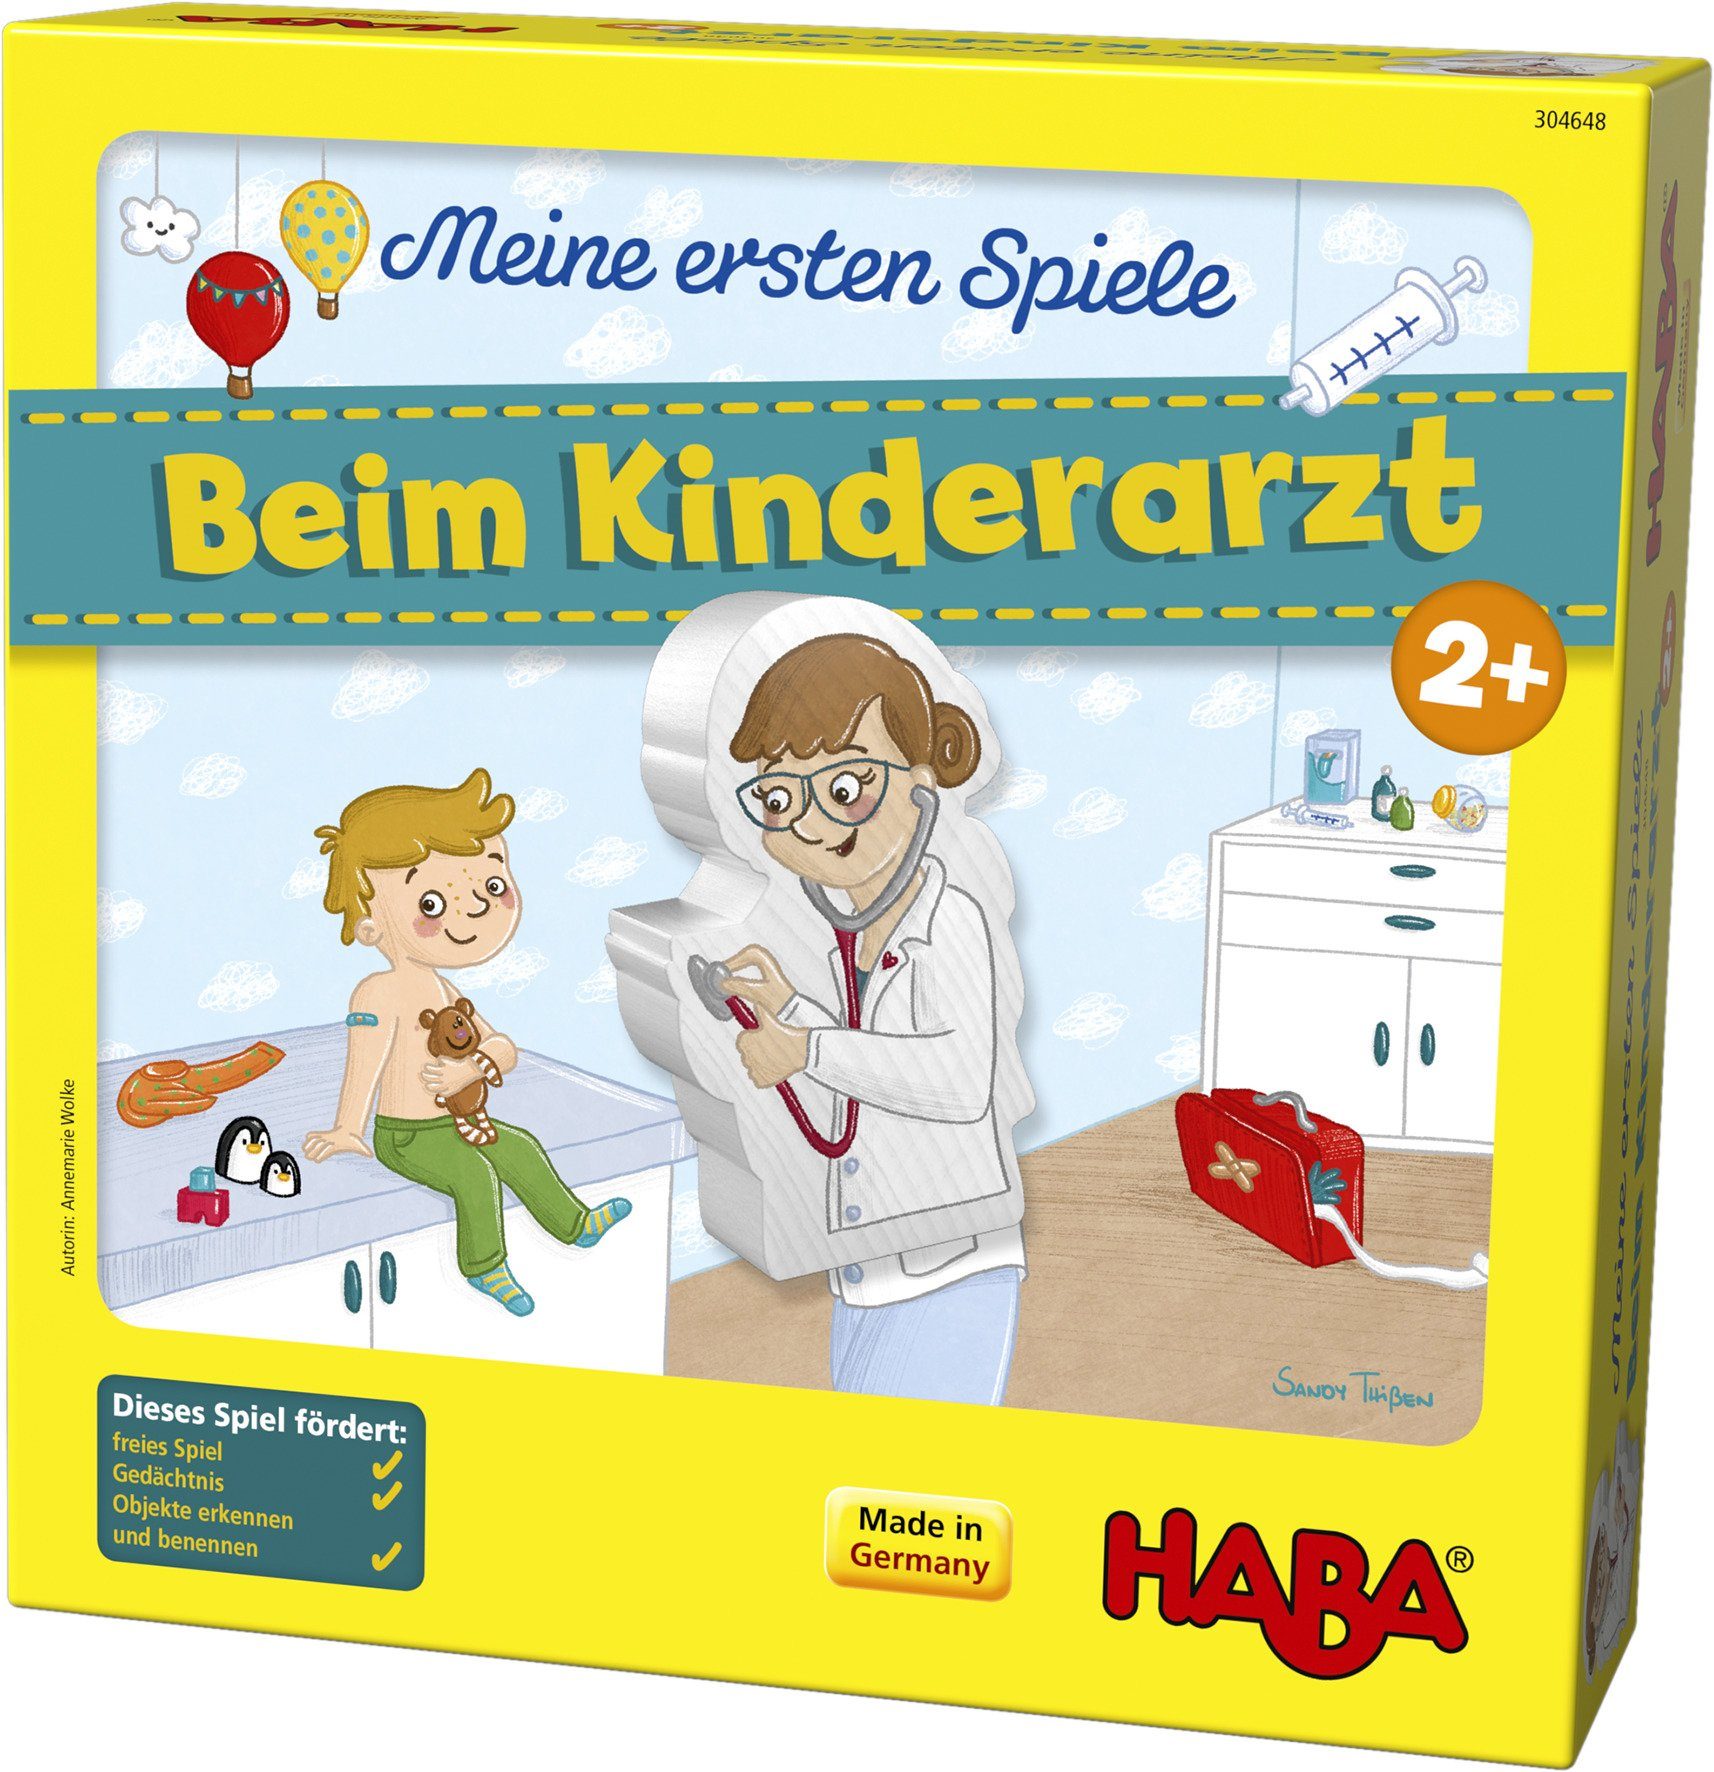 Haba Made ersten Spiel, Kinderarzt, Beim Germany Meine Spiele - Holzspielzeug, in